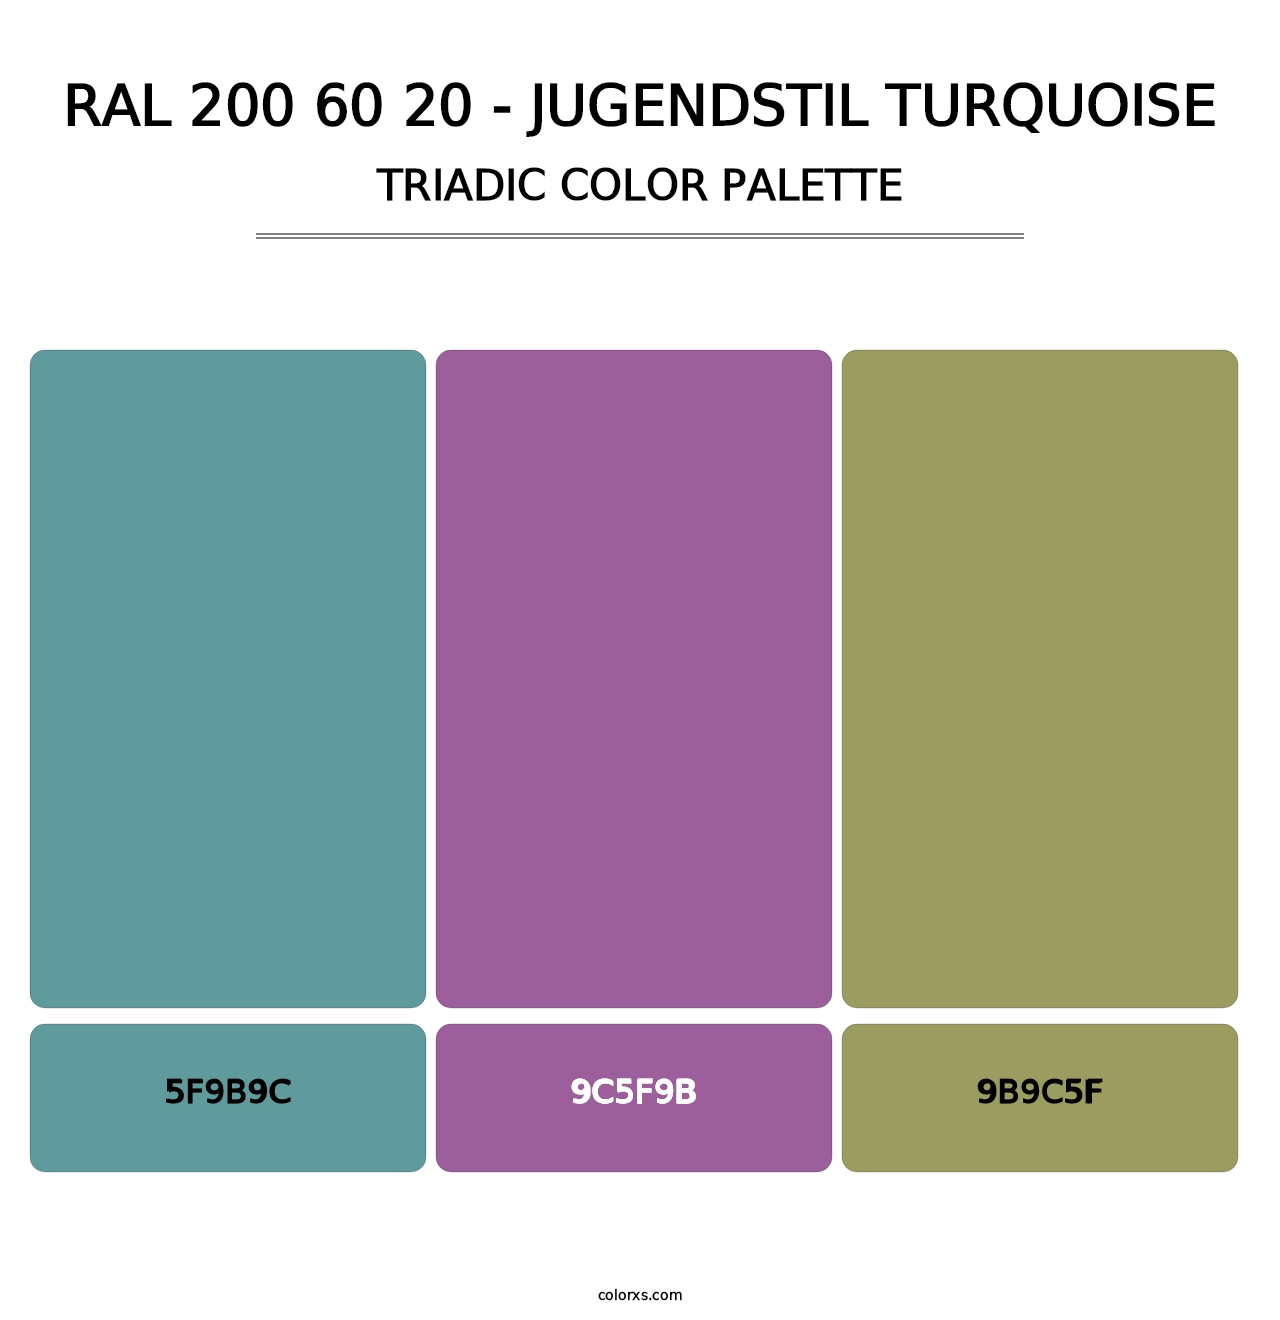 RAL 200 60 20 - Jugendstil Turquoise - Triadic Color Palette